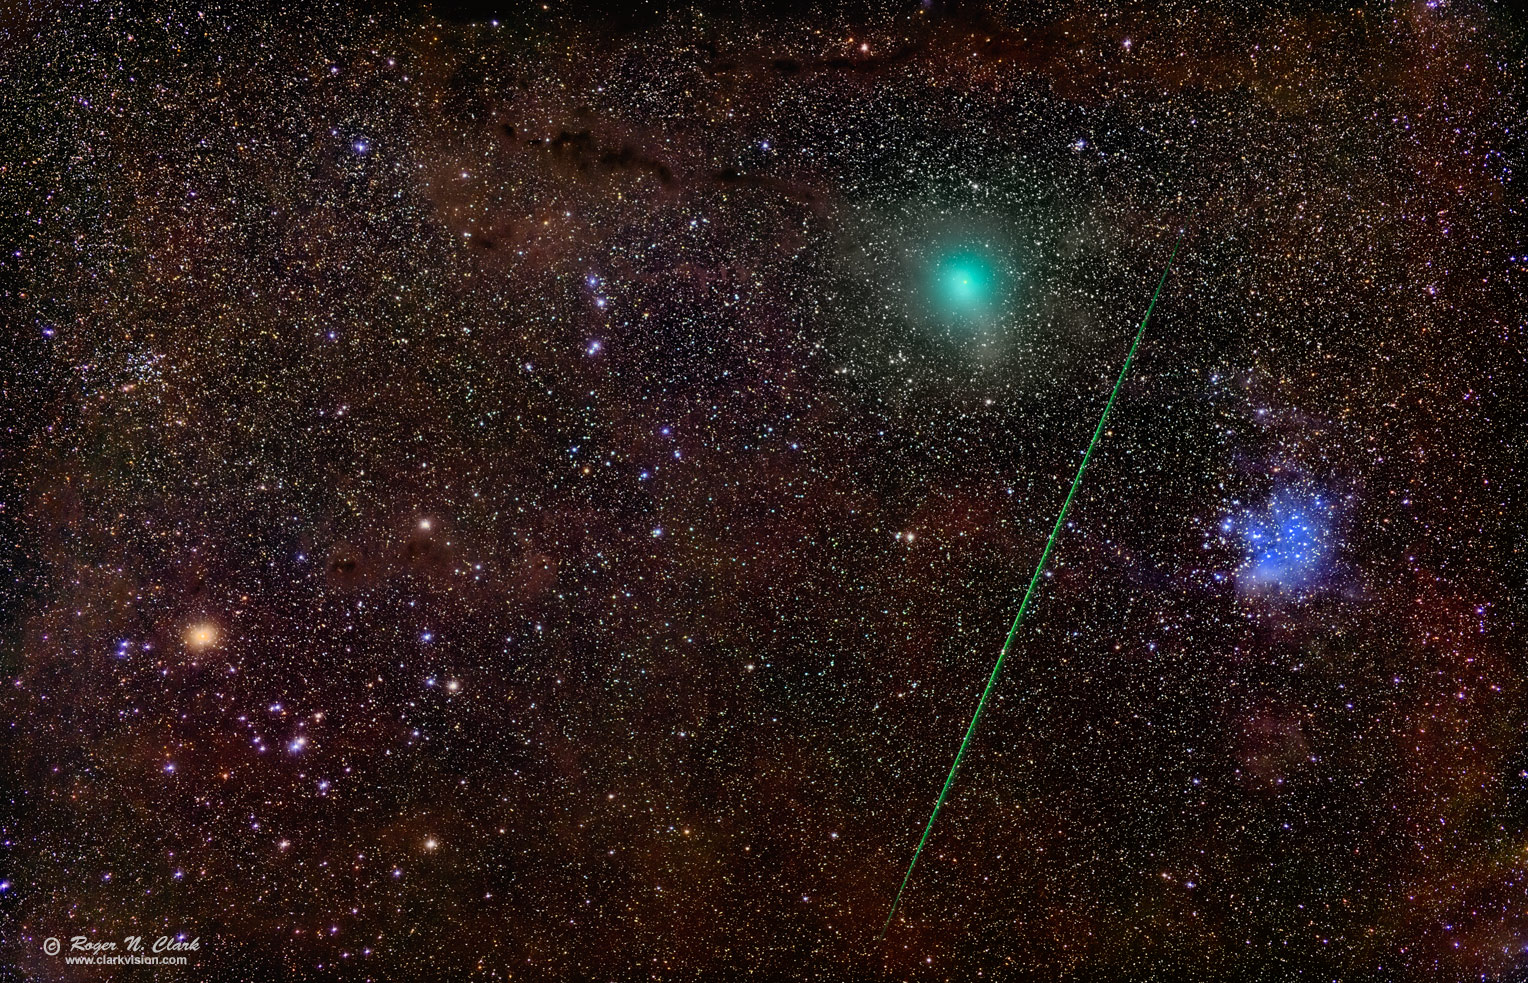 image comet-46p,m45,hyades-rnclark-img7334-472-av116-c12.17.2018.k-0.25xs.jpg is Copyrighted by Roger N. Clark, www.clarkvision.com